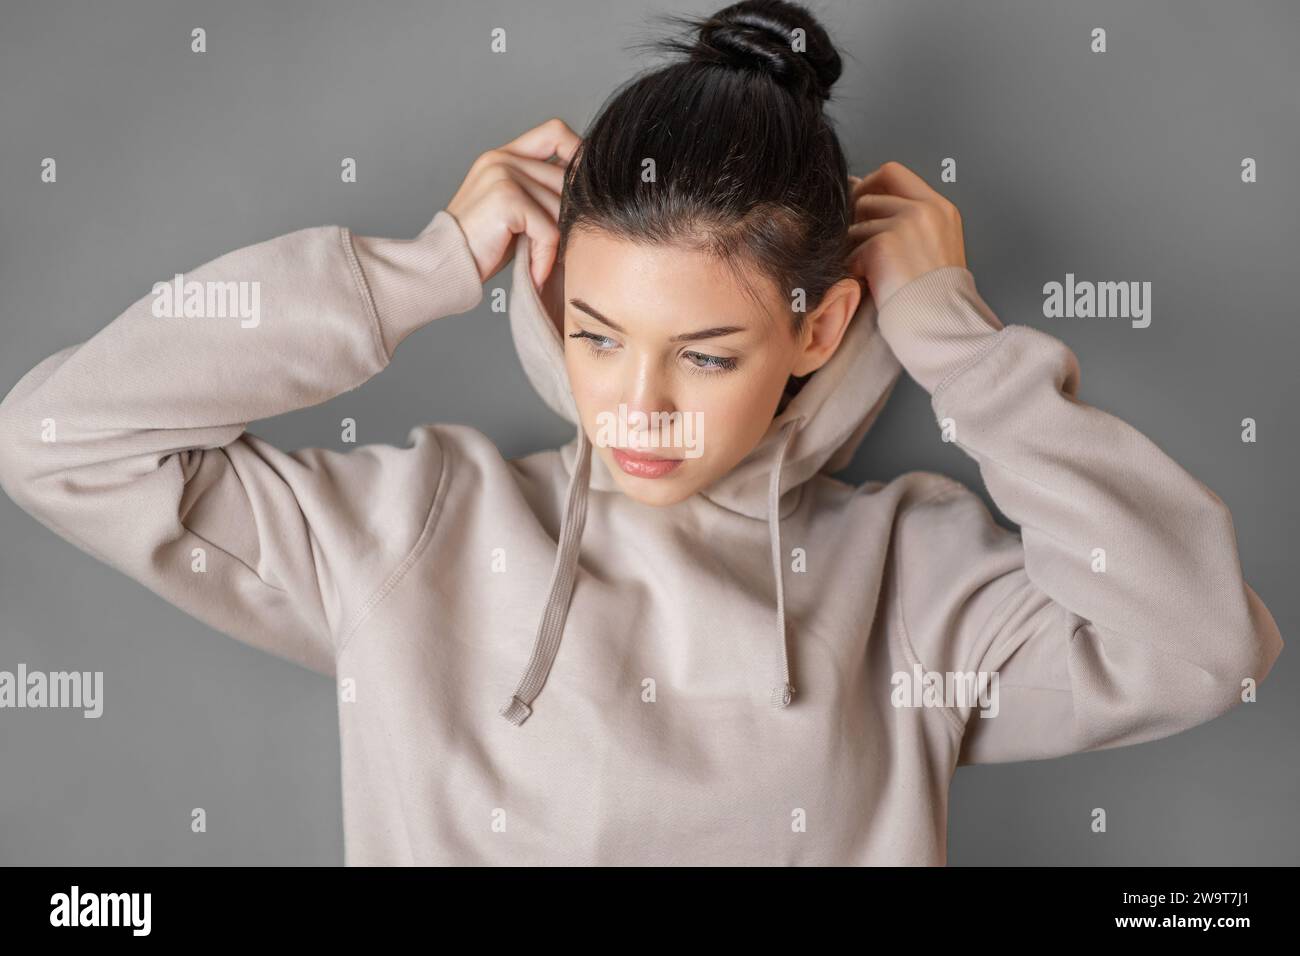 Pensive thoughtful teenager girl wearing sweatshirt with hood Stock Photo